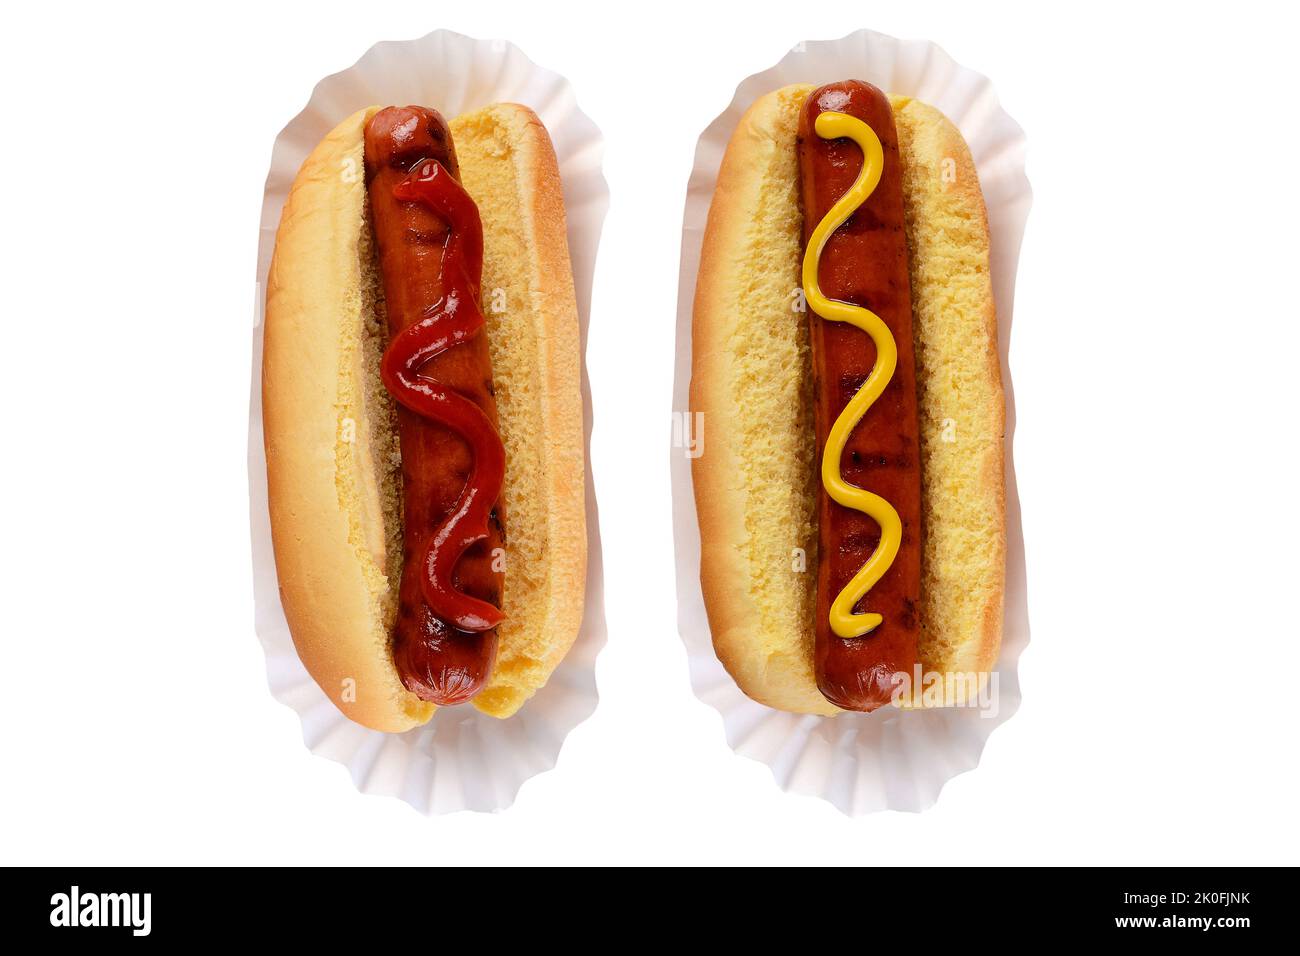 Zwei Hot Dogs in Brötchen, einer mit Ketchup und einer mit Senf eine klassische Debatte zwischen Hotdog-Fans. Stockfoto